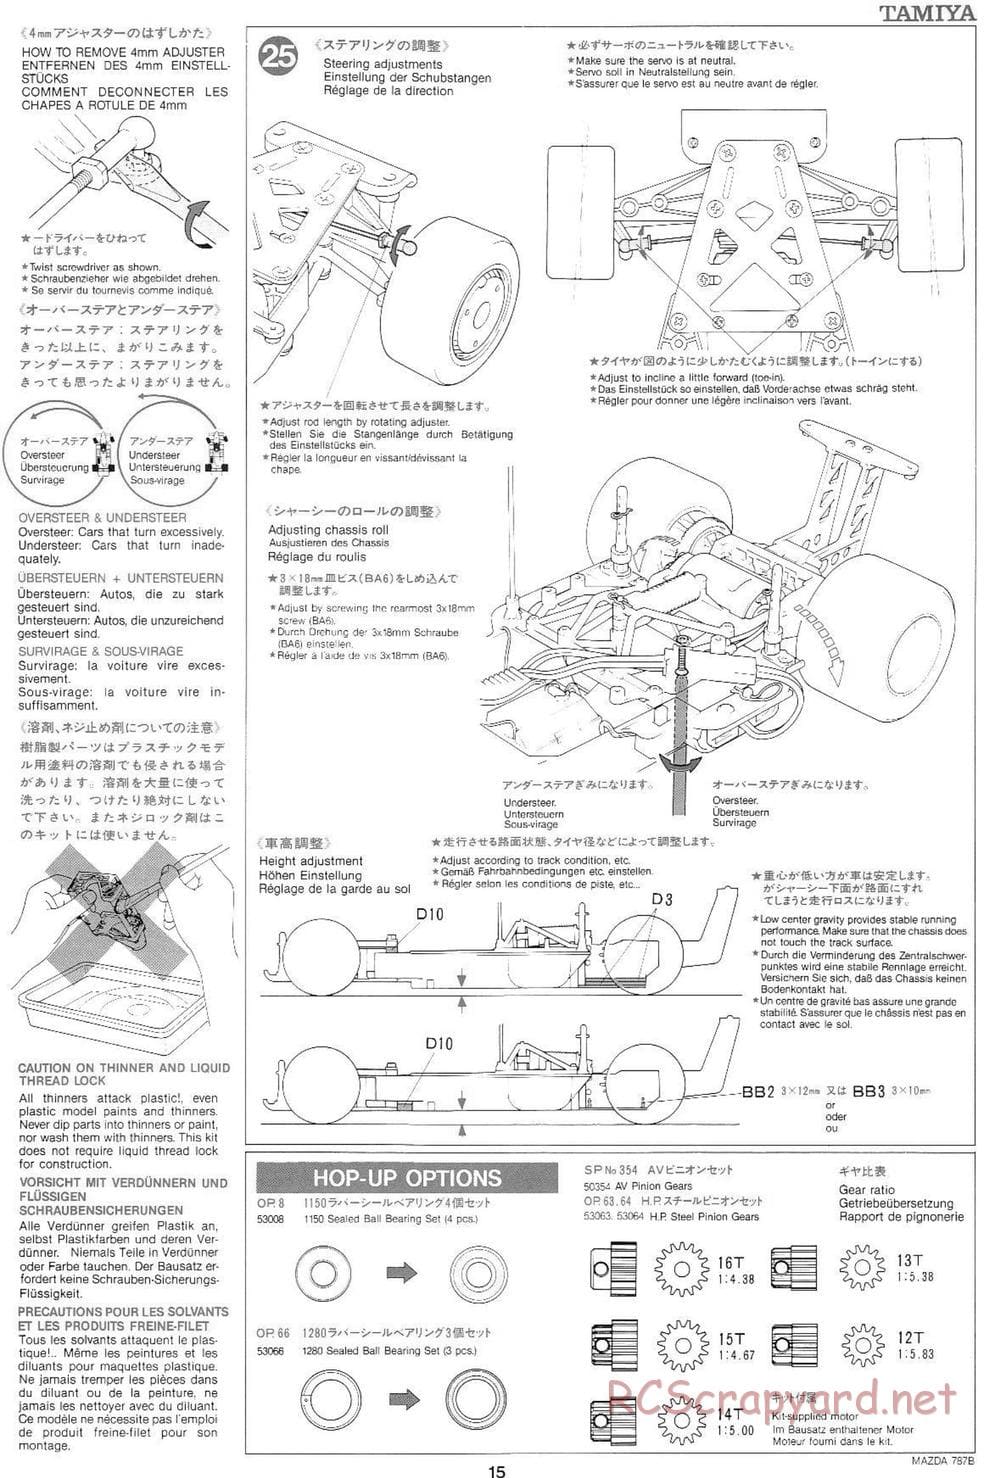 Tamiya - Mazda 787B - Group-C Chassis - Manual - Page 15